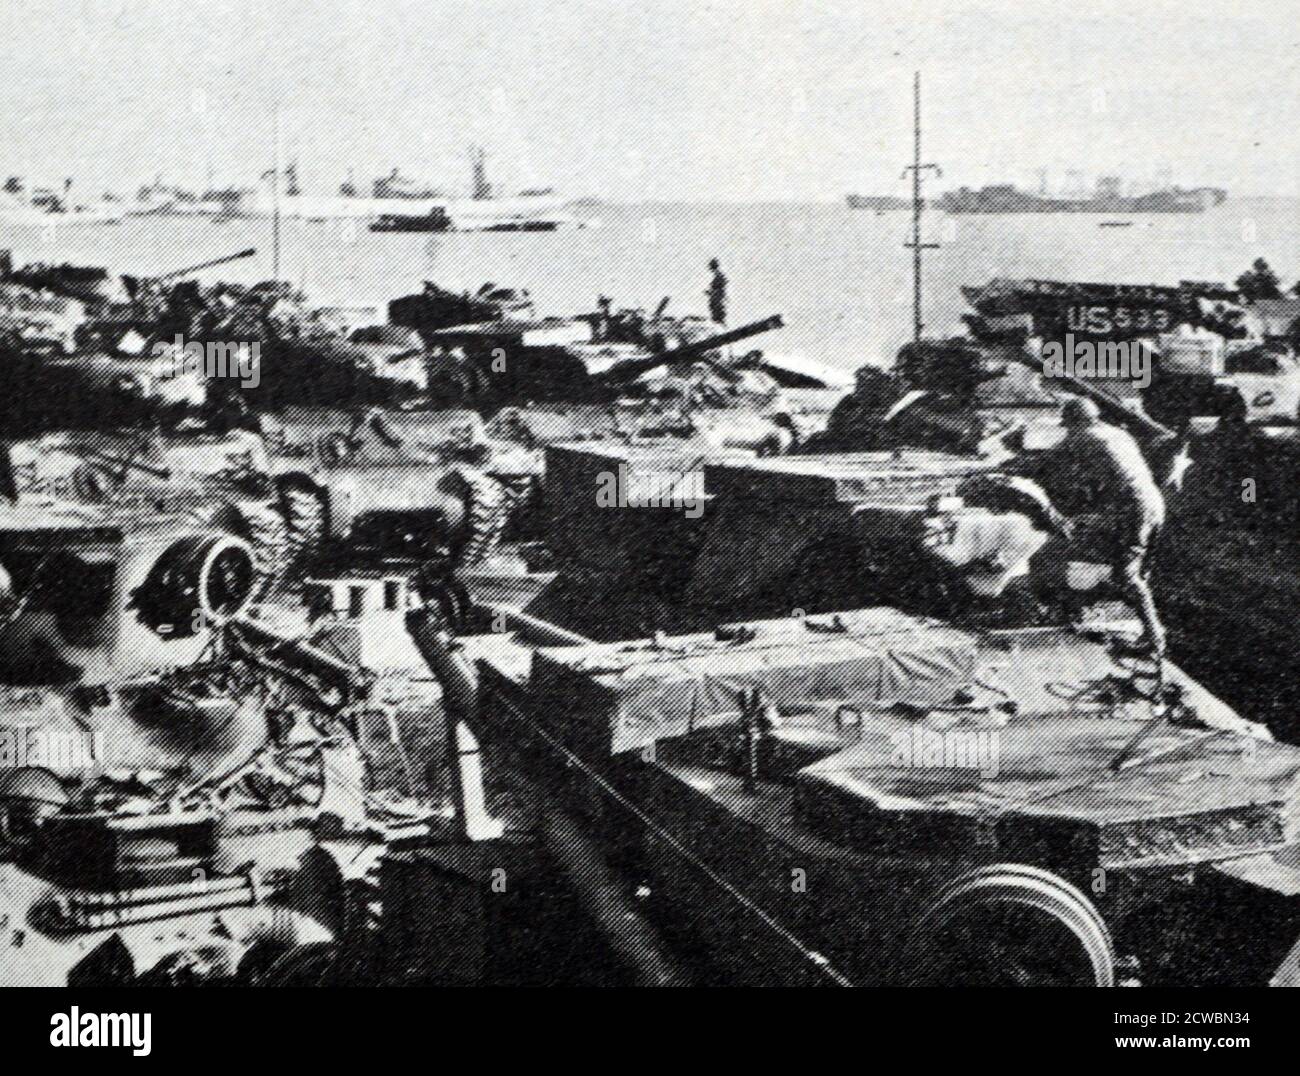 Fotografia in bianco e nero della seconda guerra mondiale (1939-1945) che mostra le attrezzature militari americane in arrivo a Cherbourg. Foto Stock